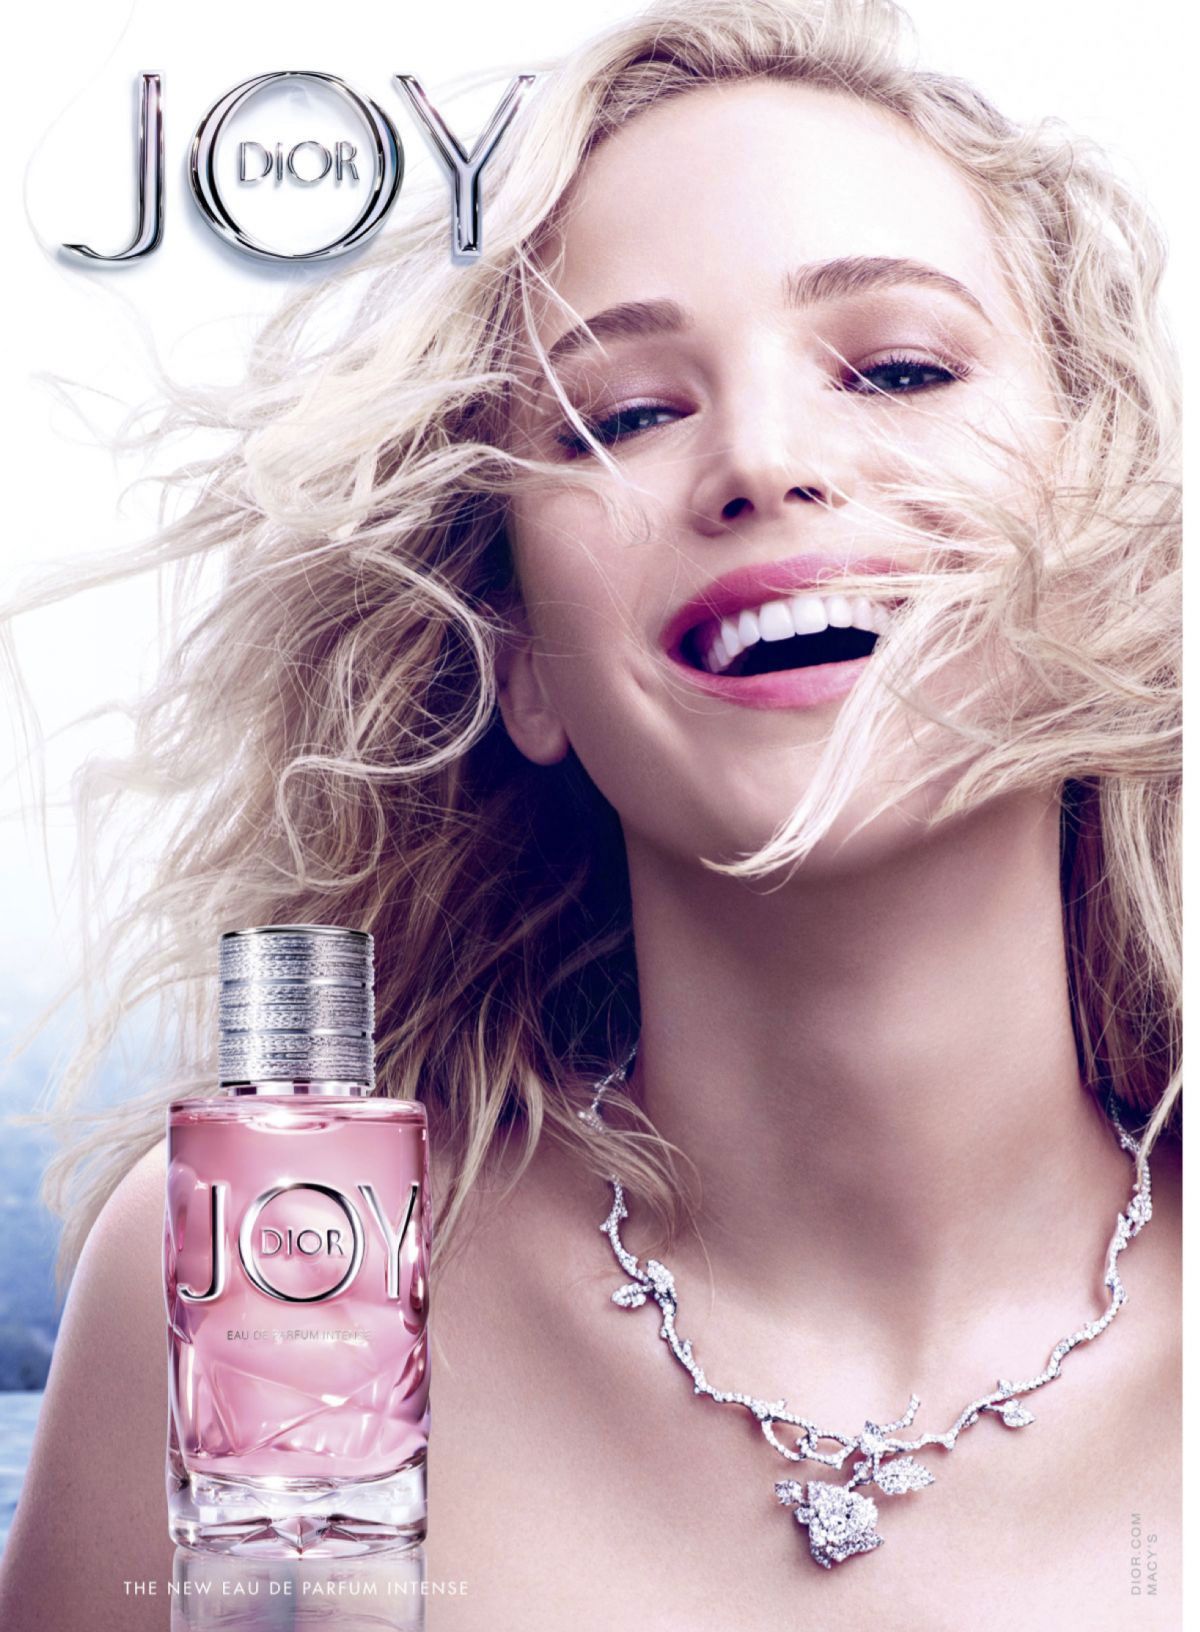 แพ็คคู่ JOY by Dior Eau de Parfum Intense 1ml กลิ่นหอมที่เป็นดั่งพลุแห่งมวลไม้ จากกลิ่นส้มผสานกับประกายจากกลาสส์โรสและมะลิ เจือด้วยกลิ่นแซนดัลวู้ดและวนิลา